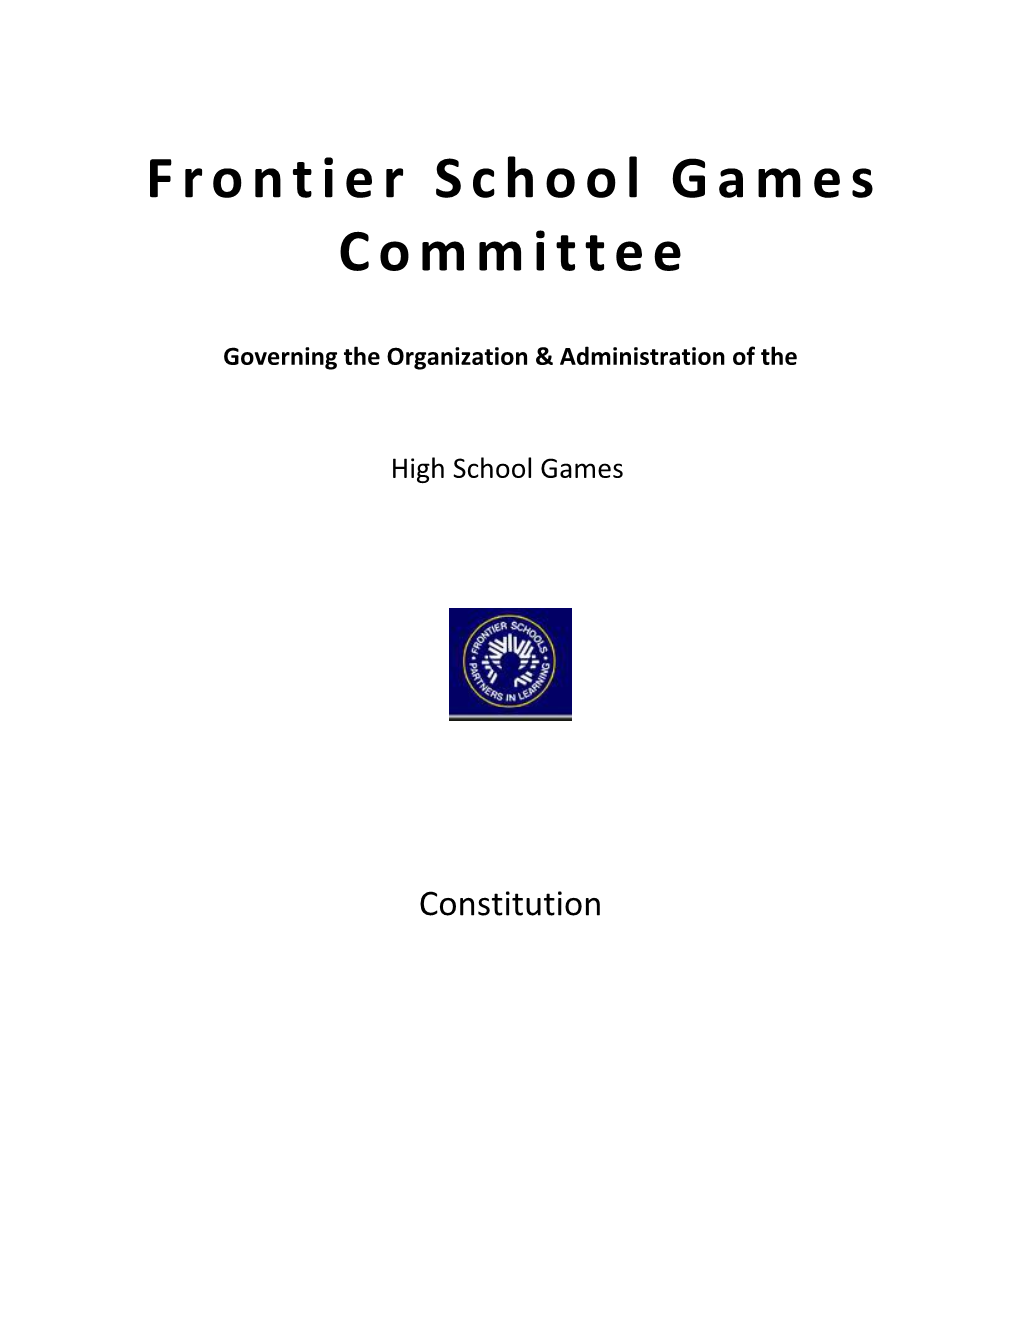 Frontier School Games Committee